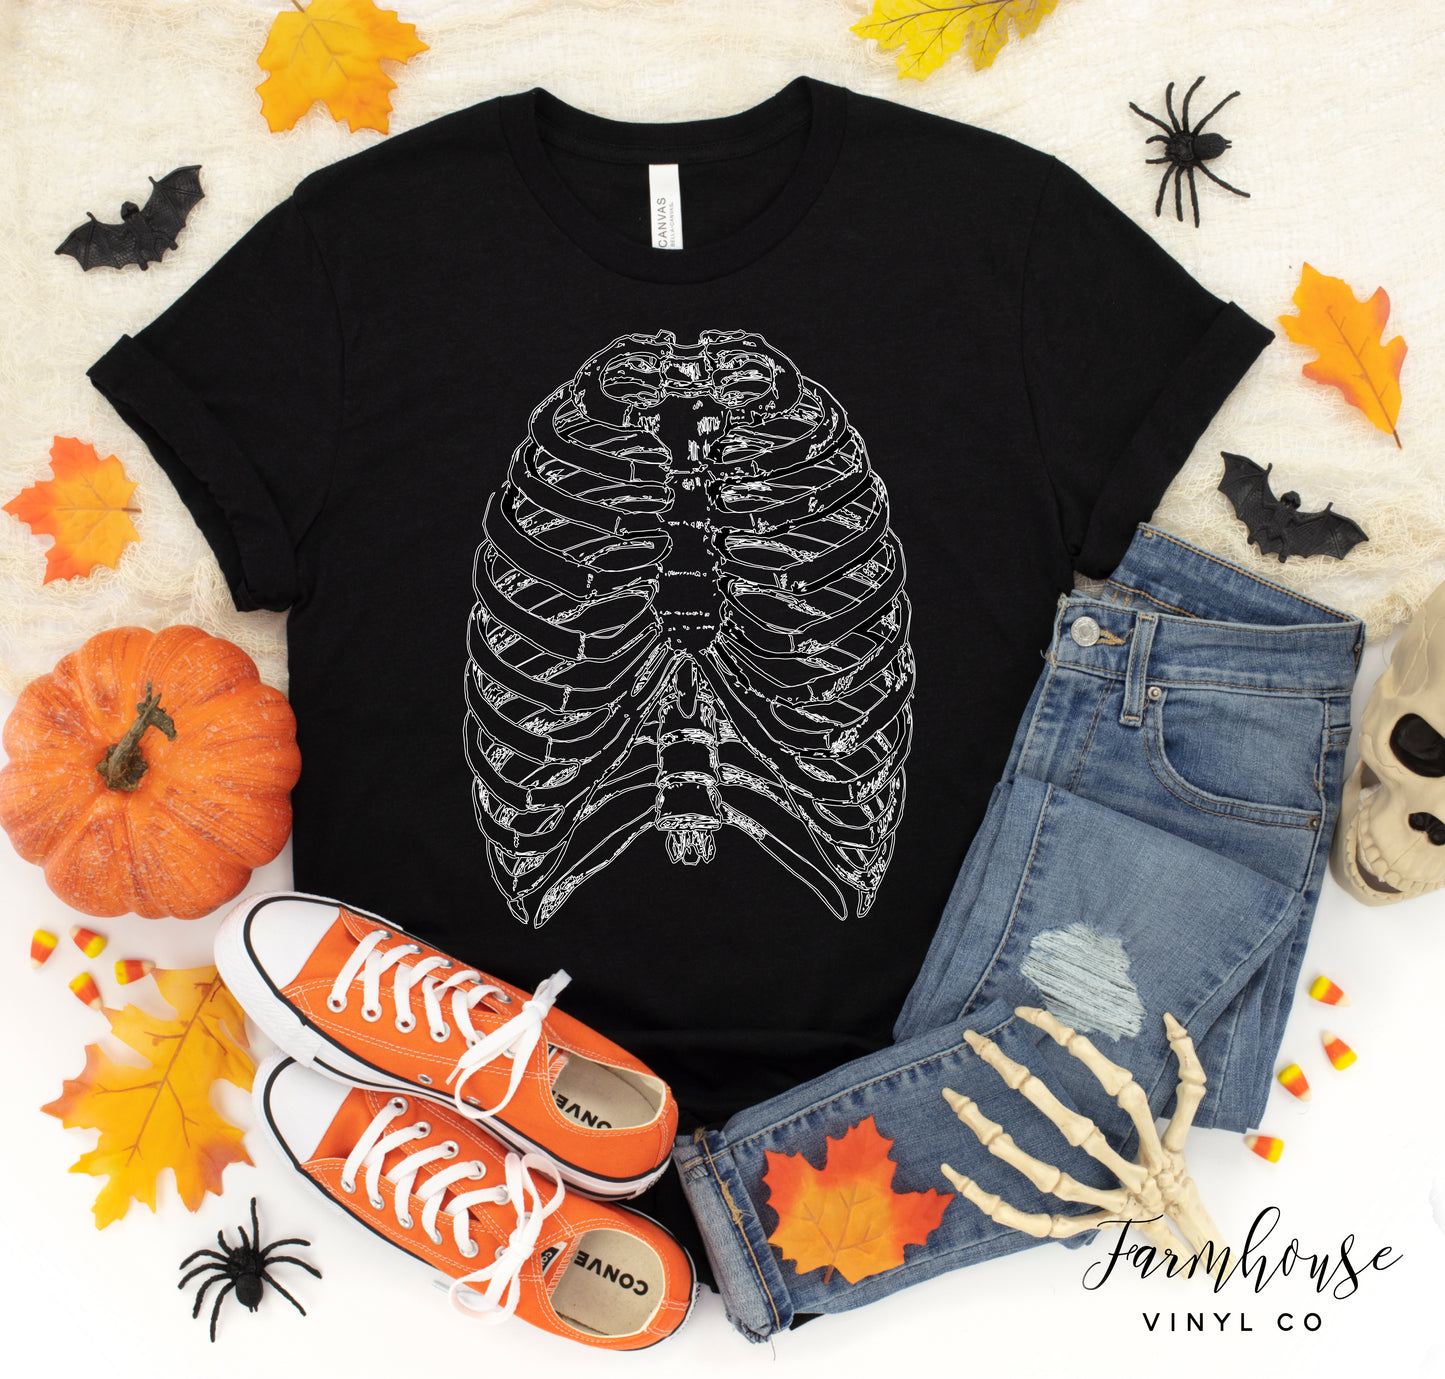 Halloween Skeleton Rib Cage Shirt - Farmhouse Vinyl Co